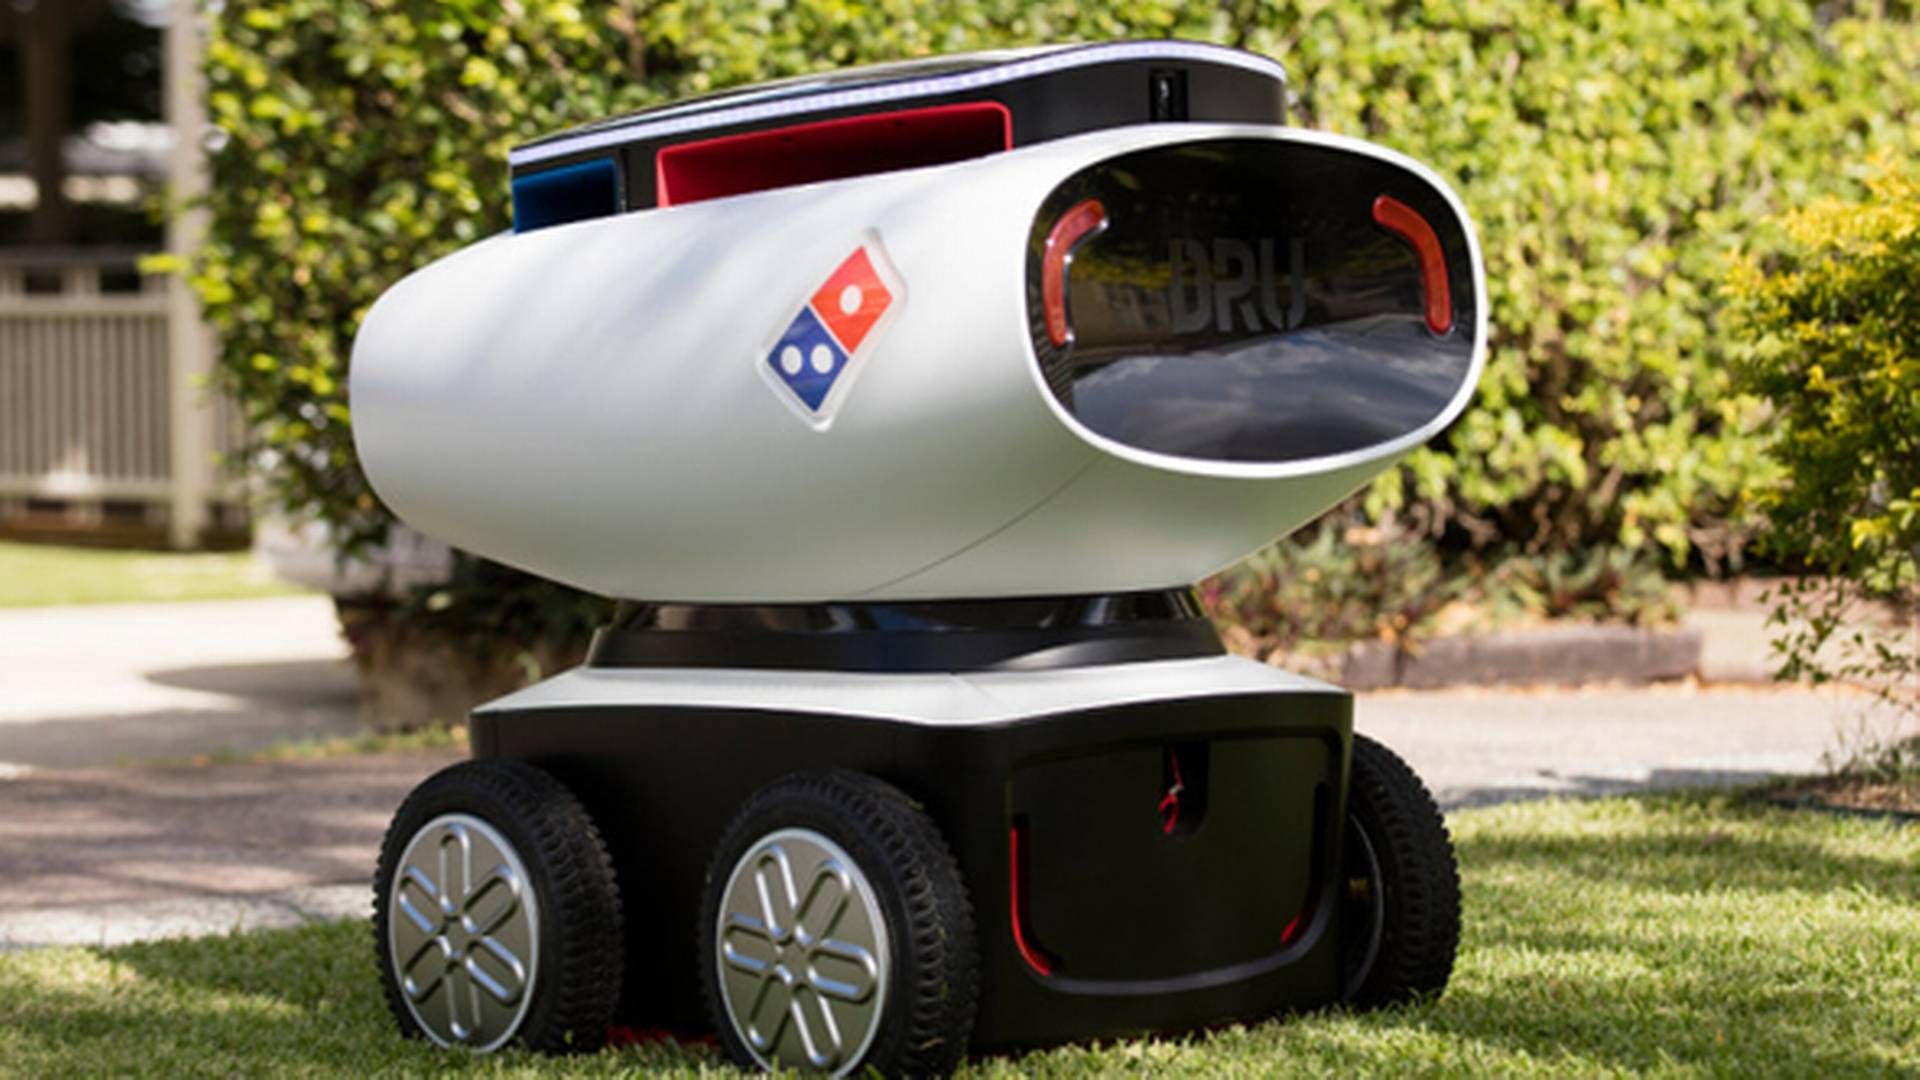 Domino's lancerede i 2016 en selvkørende pizzarobot. Det kan måske blive fremtiden i Danmark også. | Foto: Domino's